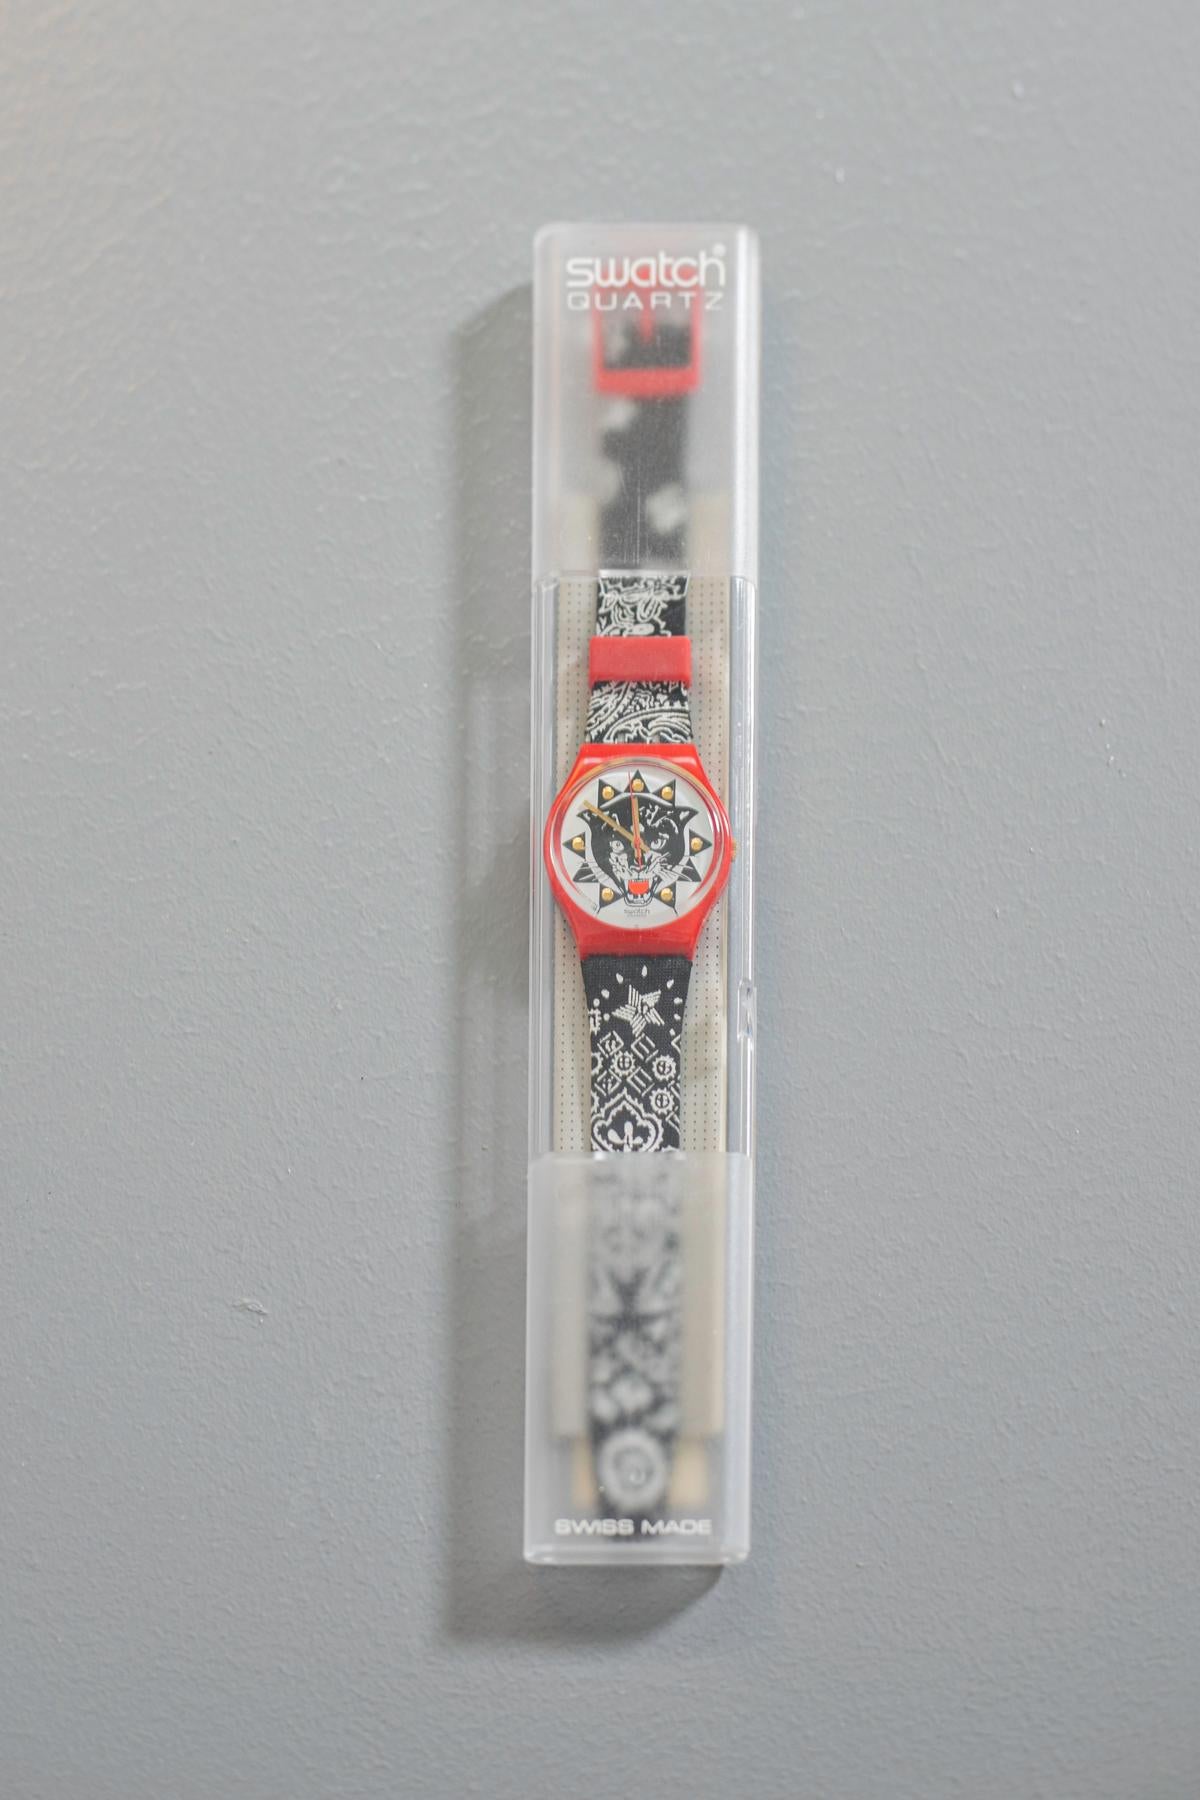 Klassische Swatch-Uhr aus der Kollektion 1994 mit einem wirklich einzigartigen Design. Eine leicht rockige Seele entlang des Armbands wurde entworfen, eine Fantasie, die an die Bandanas der Harley Davidson Biker erinnert, das Design des Zifferblatts